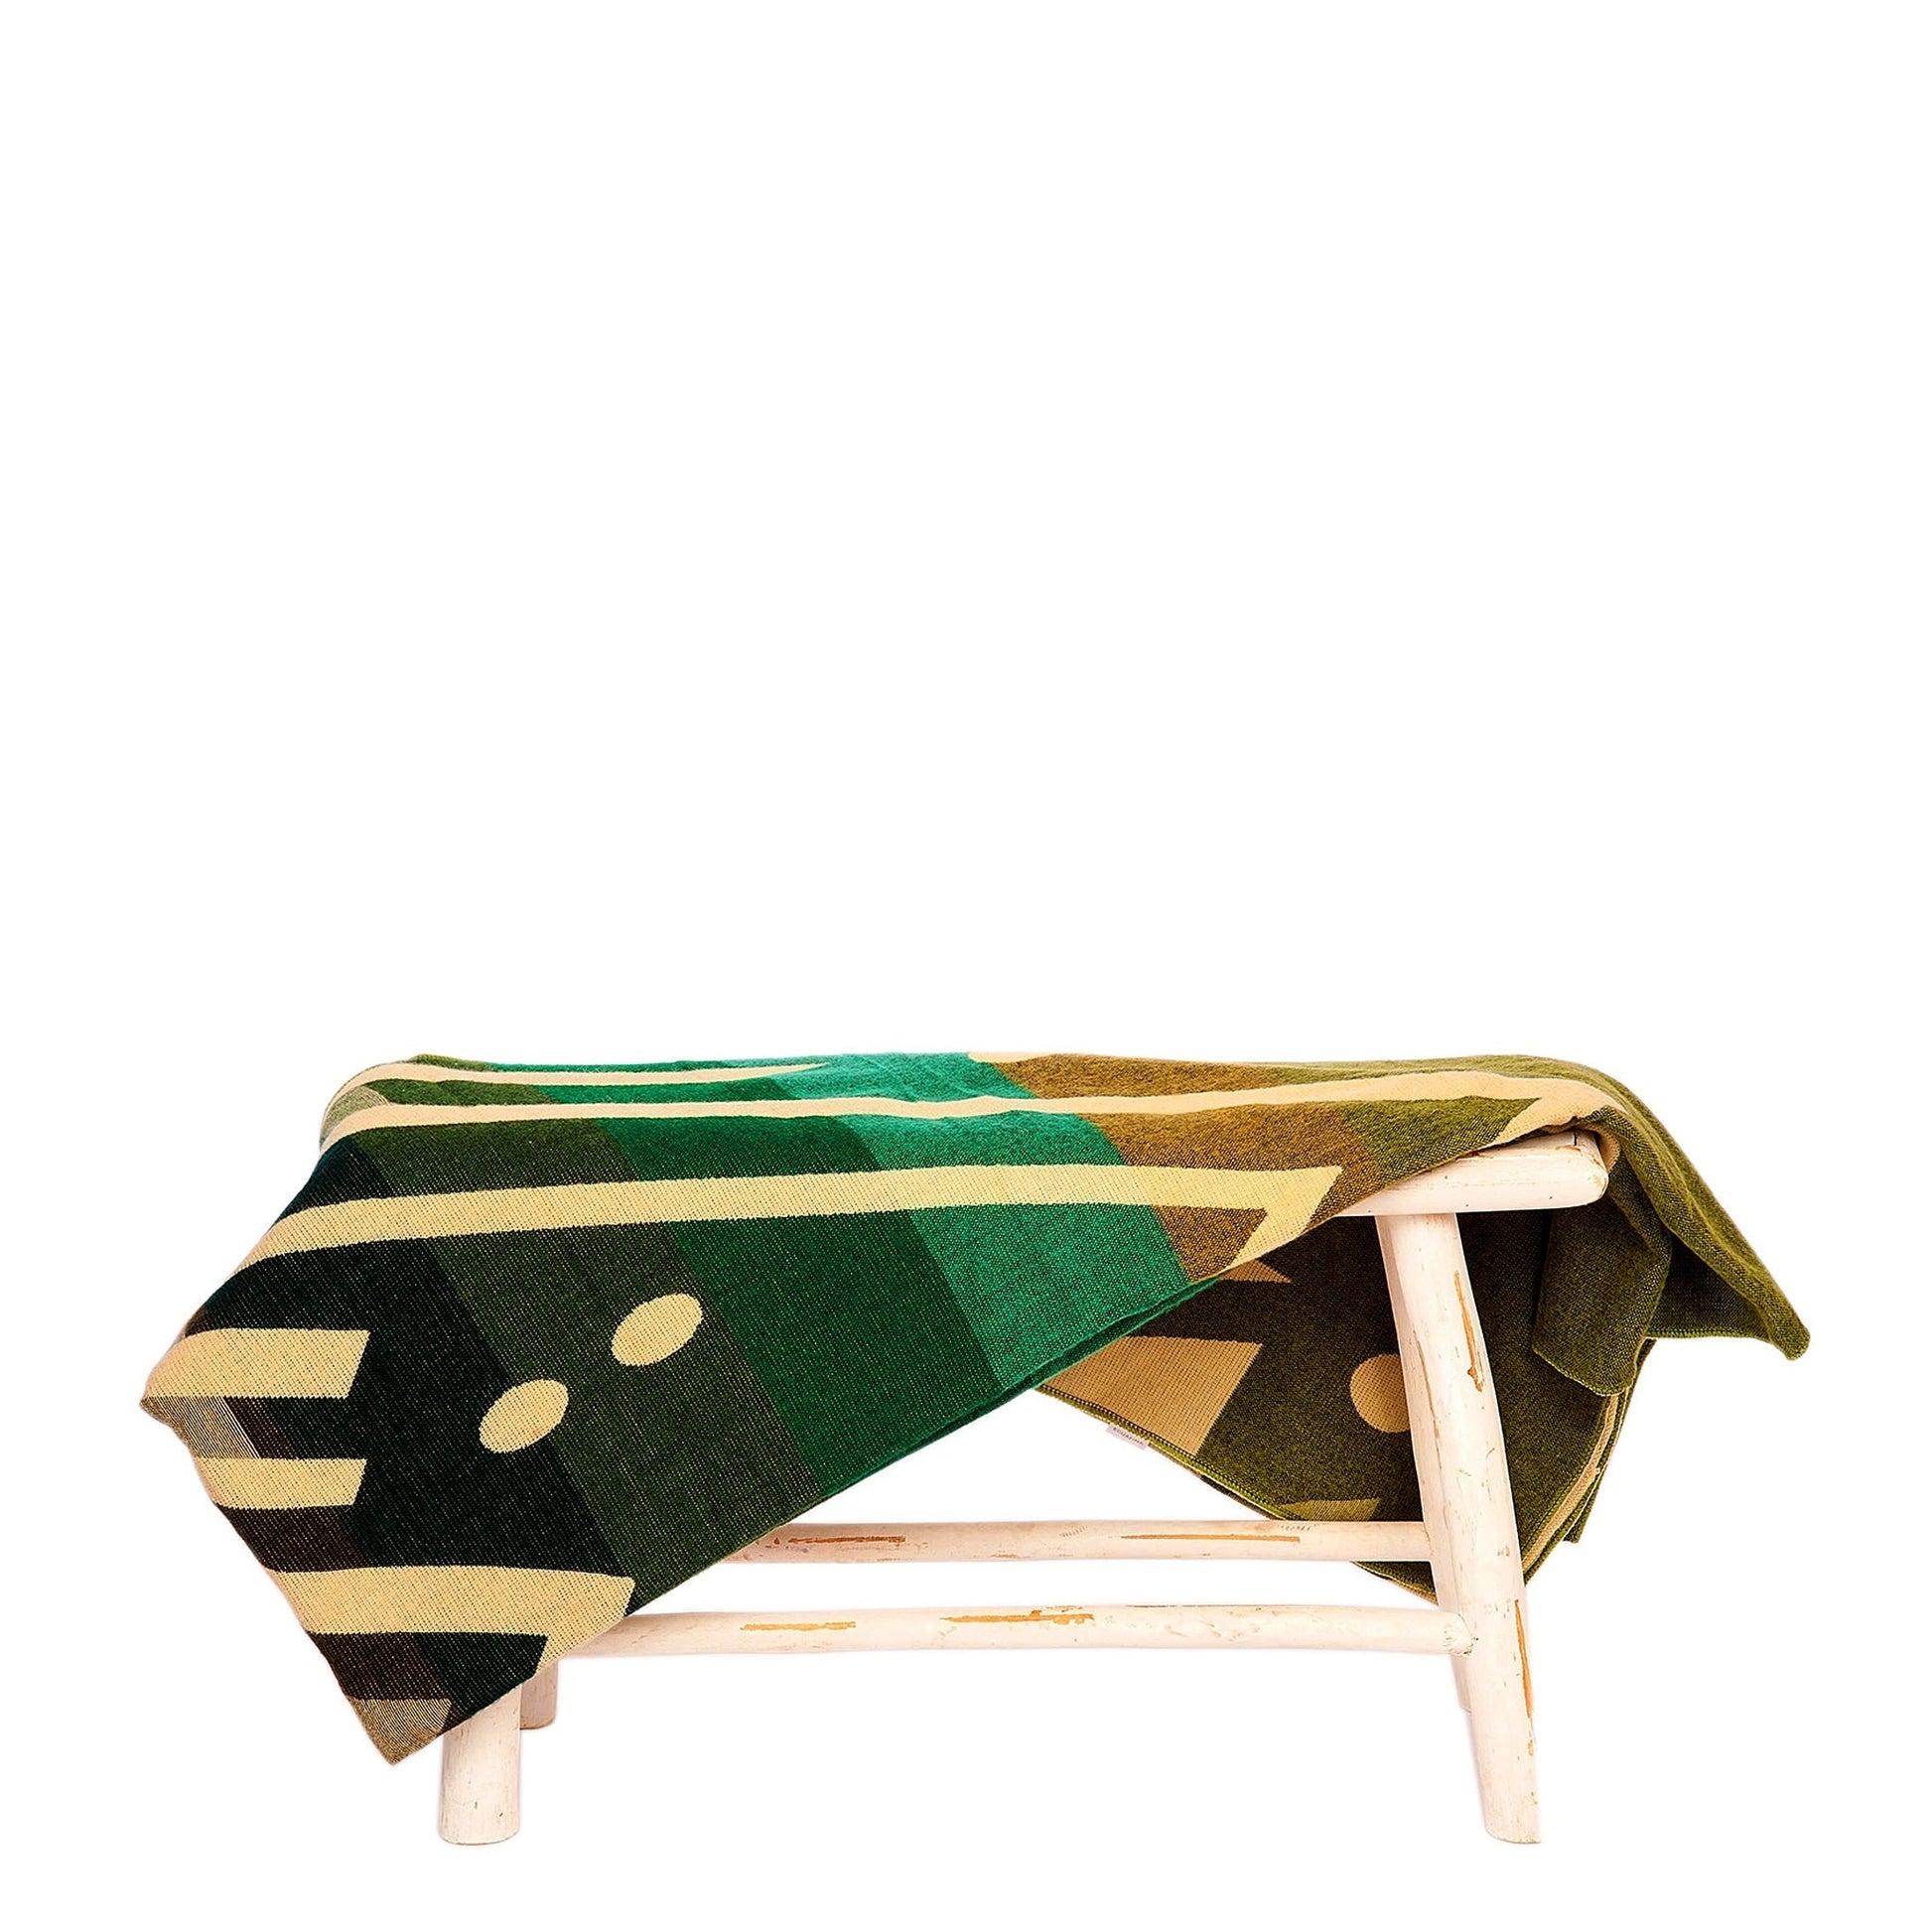 Authentische Imbabura Decke aus grüner Alpaka Wolle - 110 x 205 cm - Vandeley